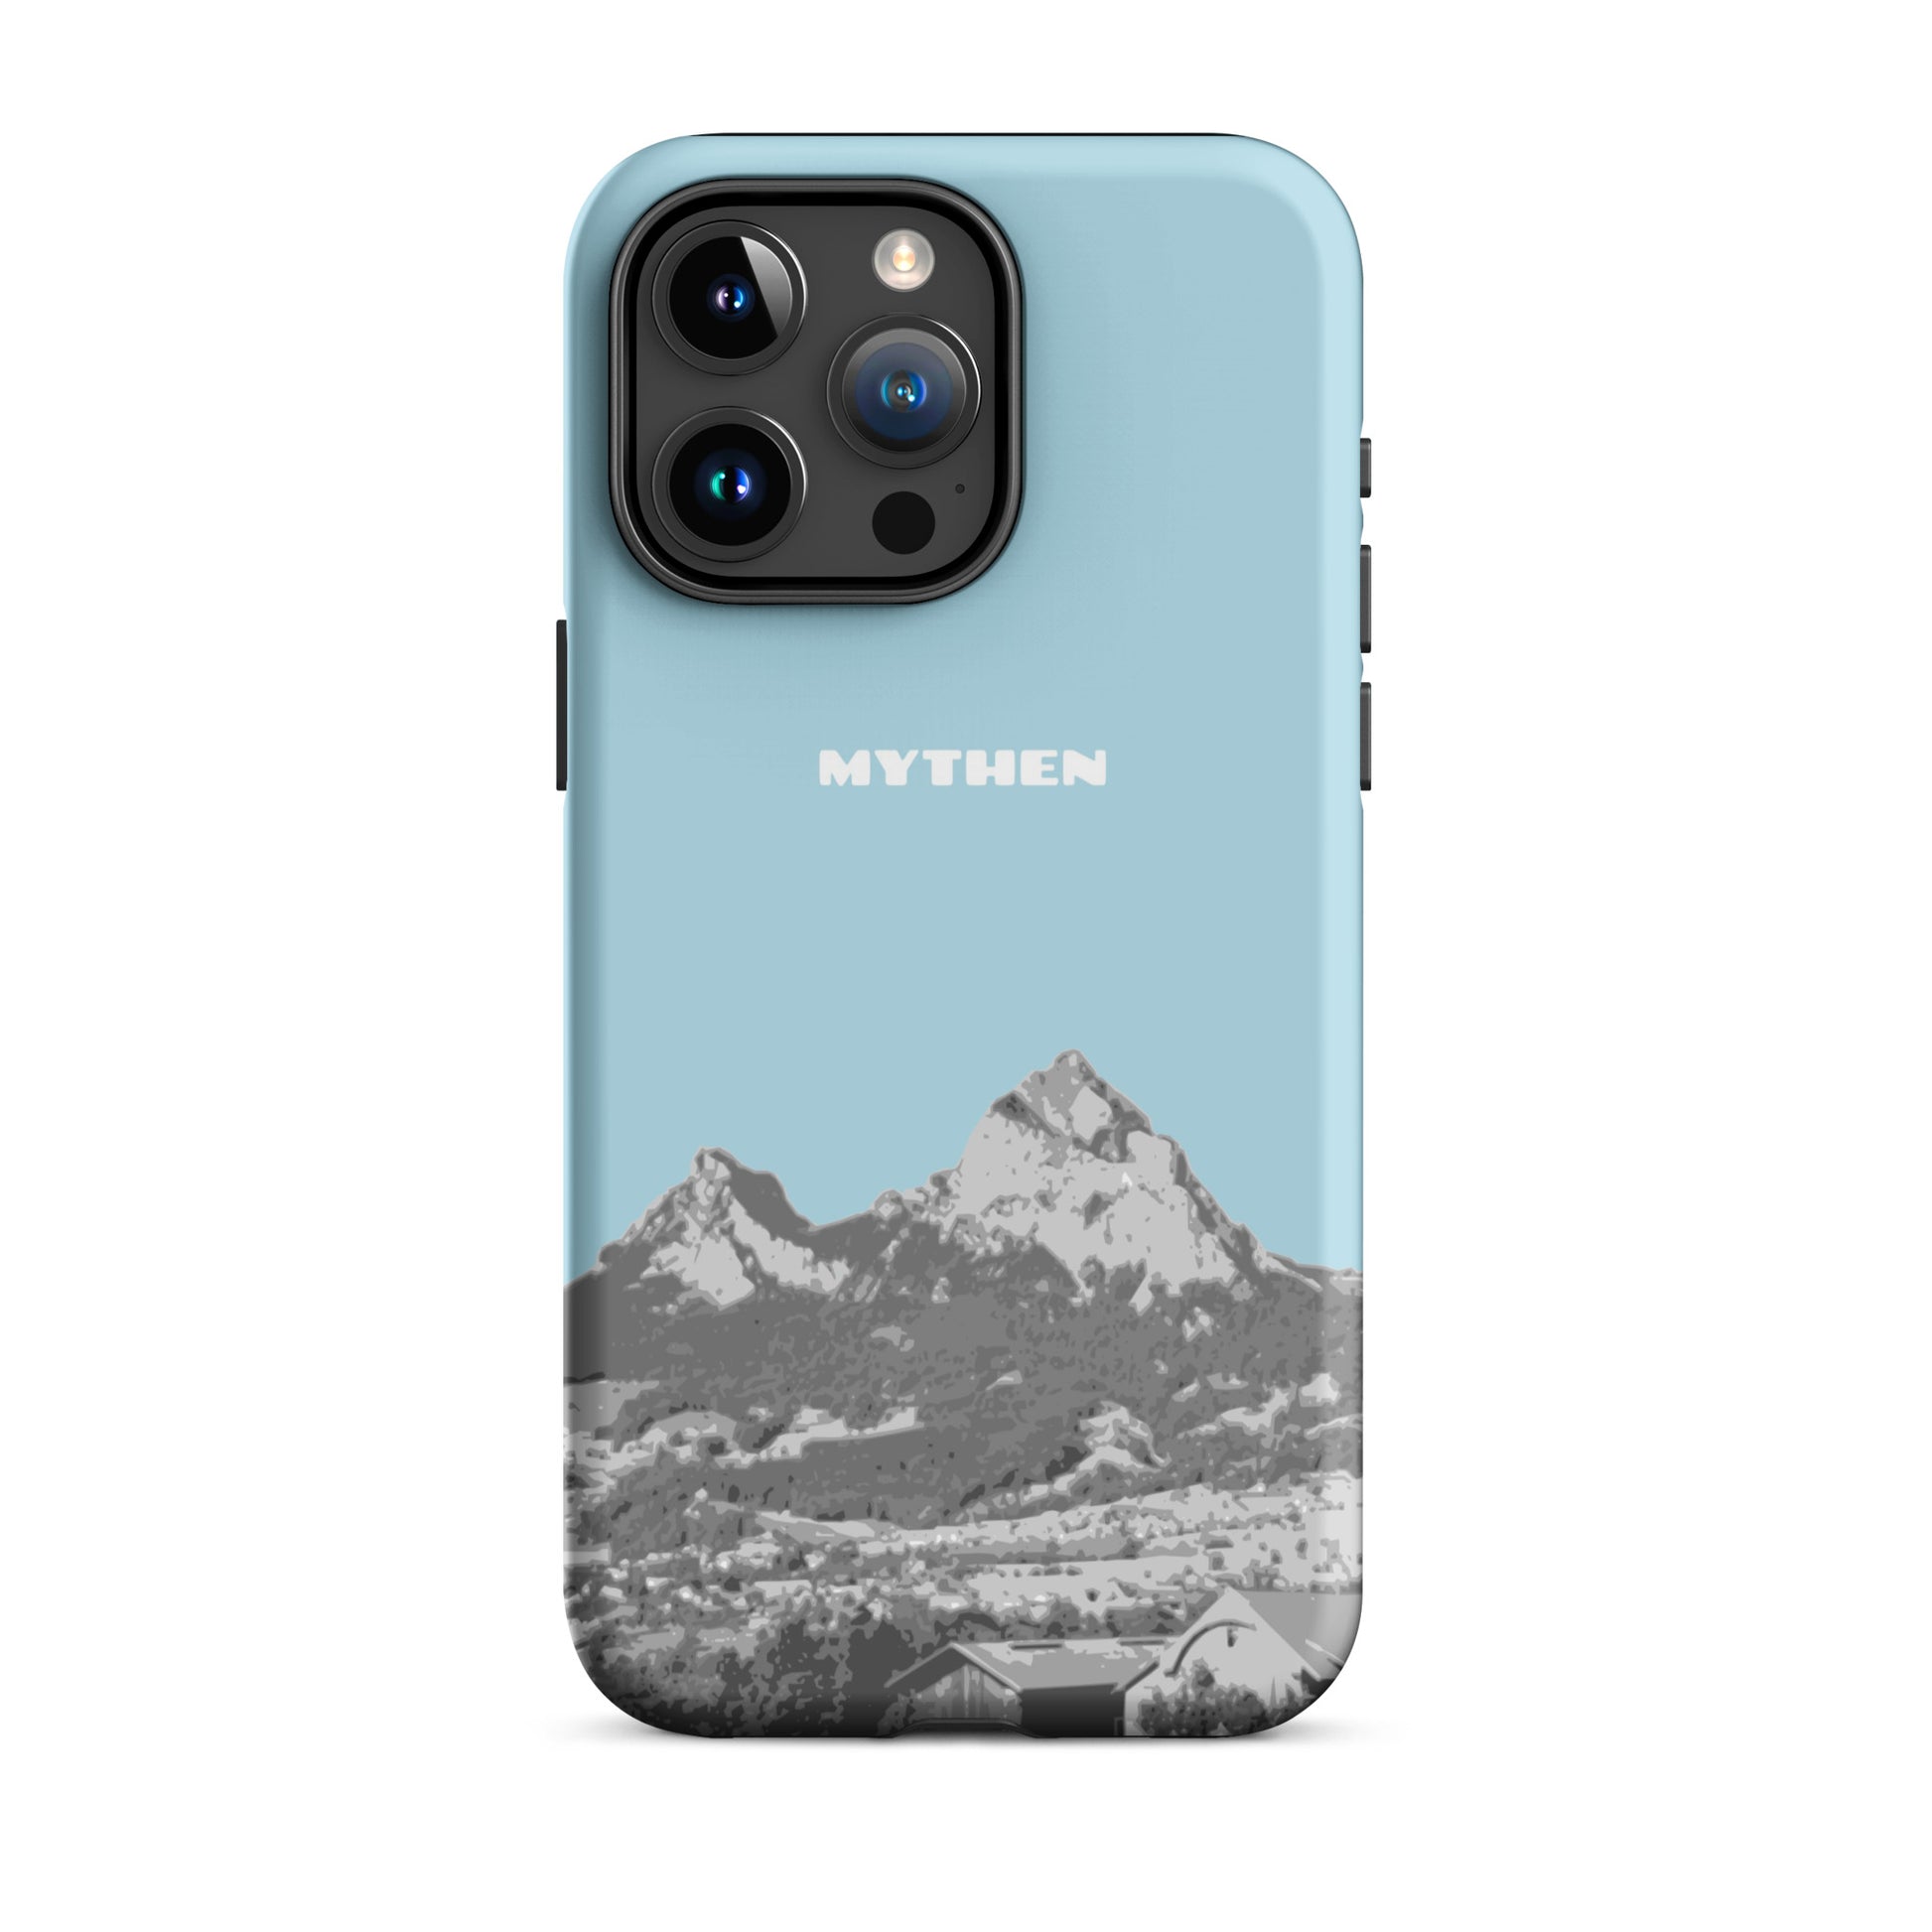 Hülle für das iPhone 15 Pro Max von Apple in der Farbe Hellblau, die den Grossen Mythen und den Kleinen Mythen bei Schwyz zeigt. 